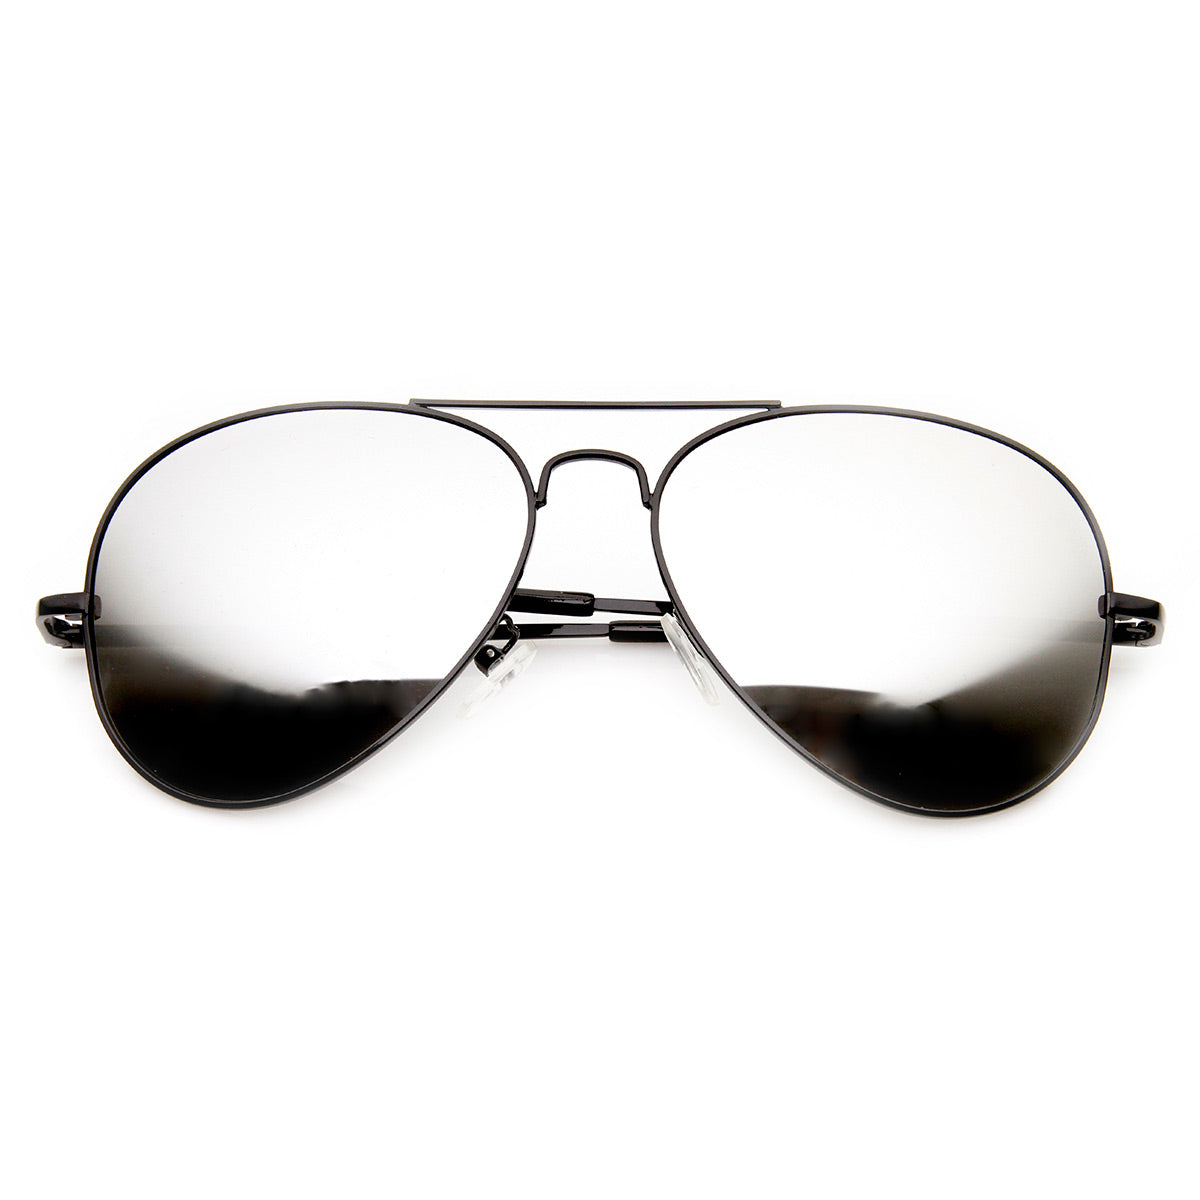 FULL MIRROR Mirrored Aviator Metal Sunglasses